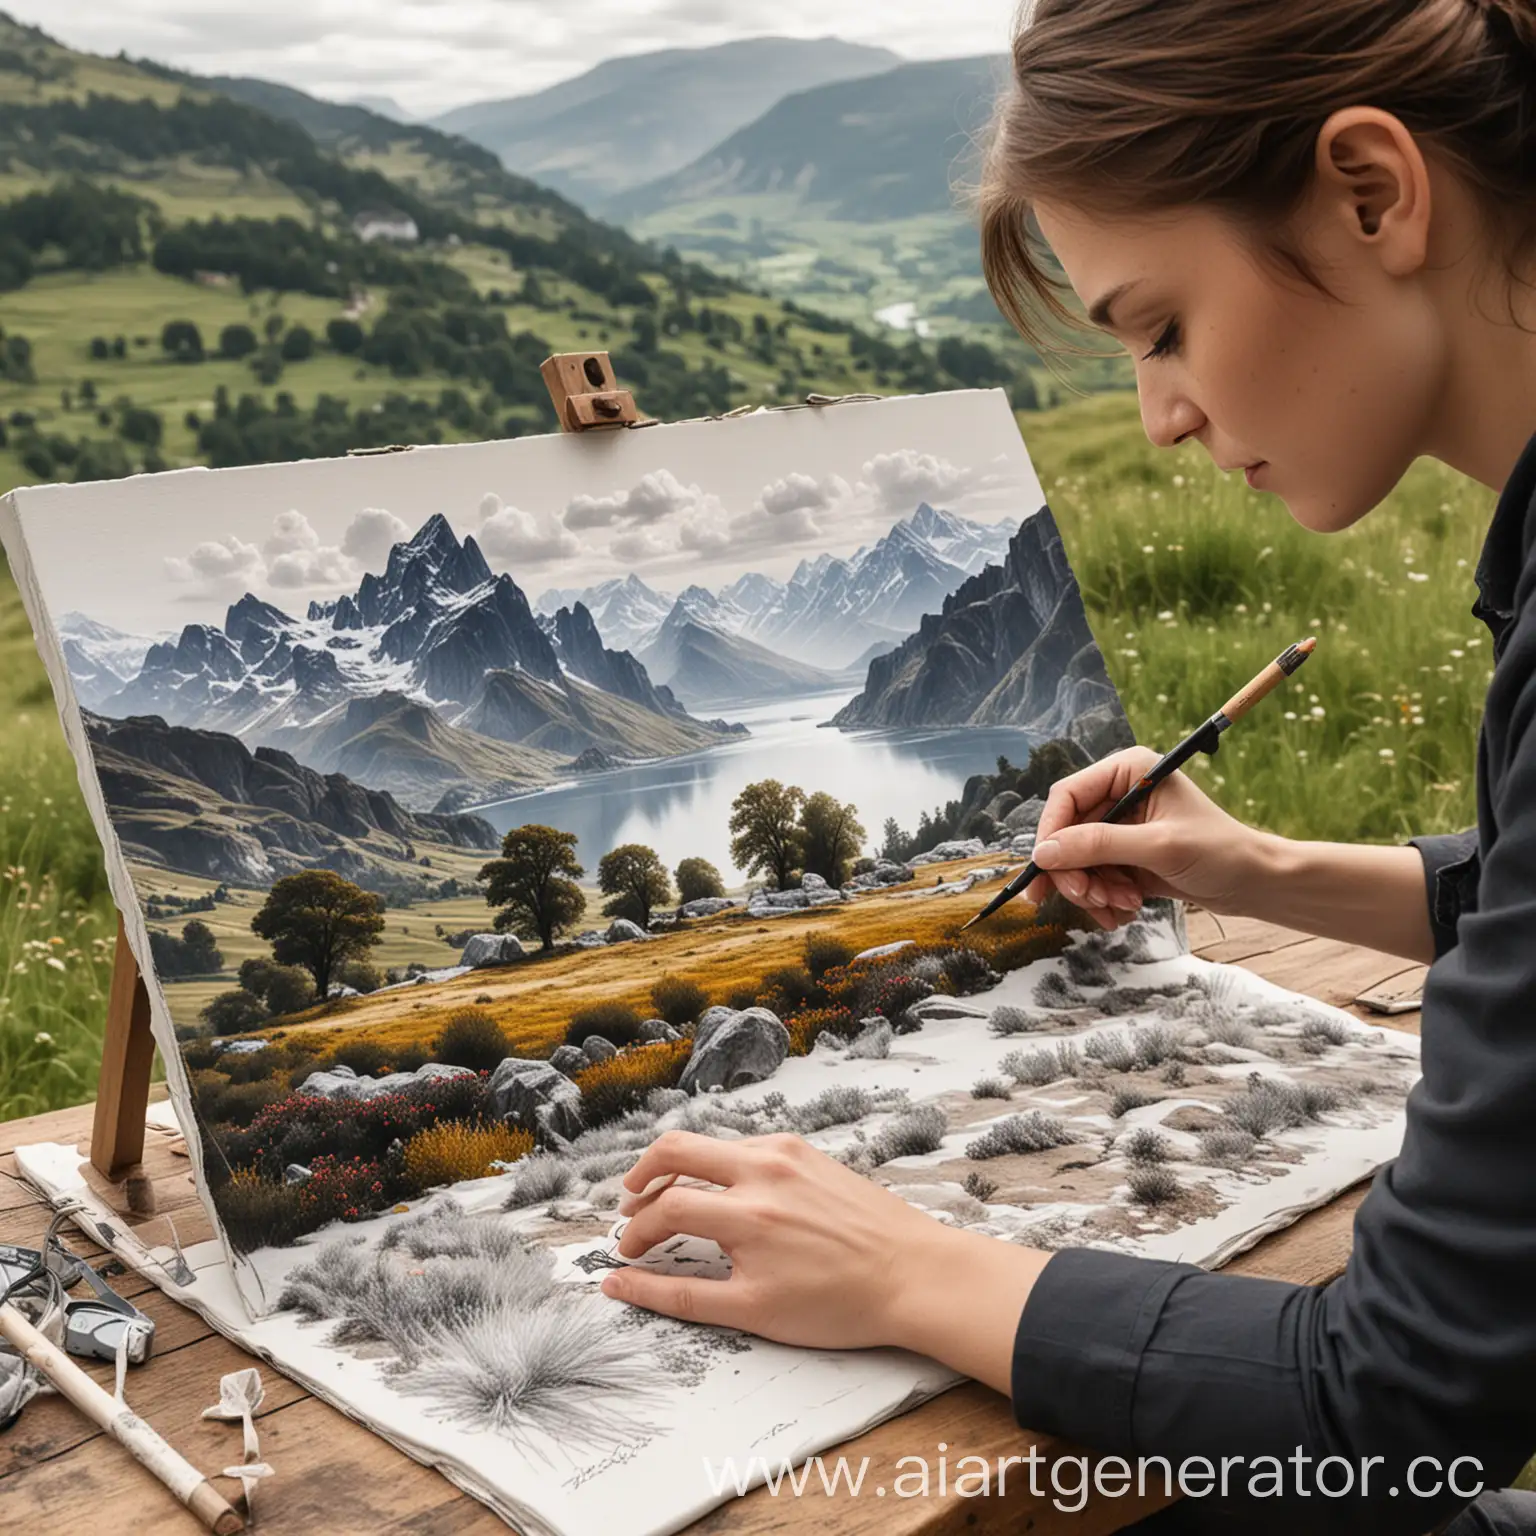  Фотография с  человеком, который  рисует  на  холсте  с помощью  специальных  перчаток,  на  холсте  появляется  красивый  пейзаж.